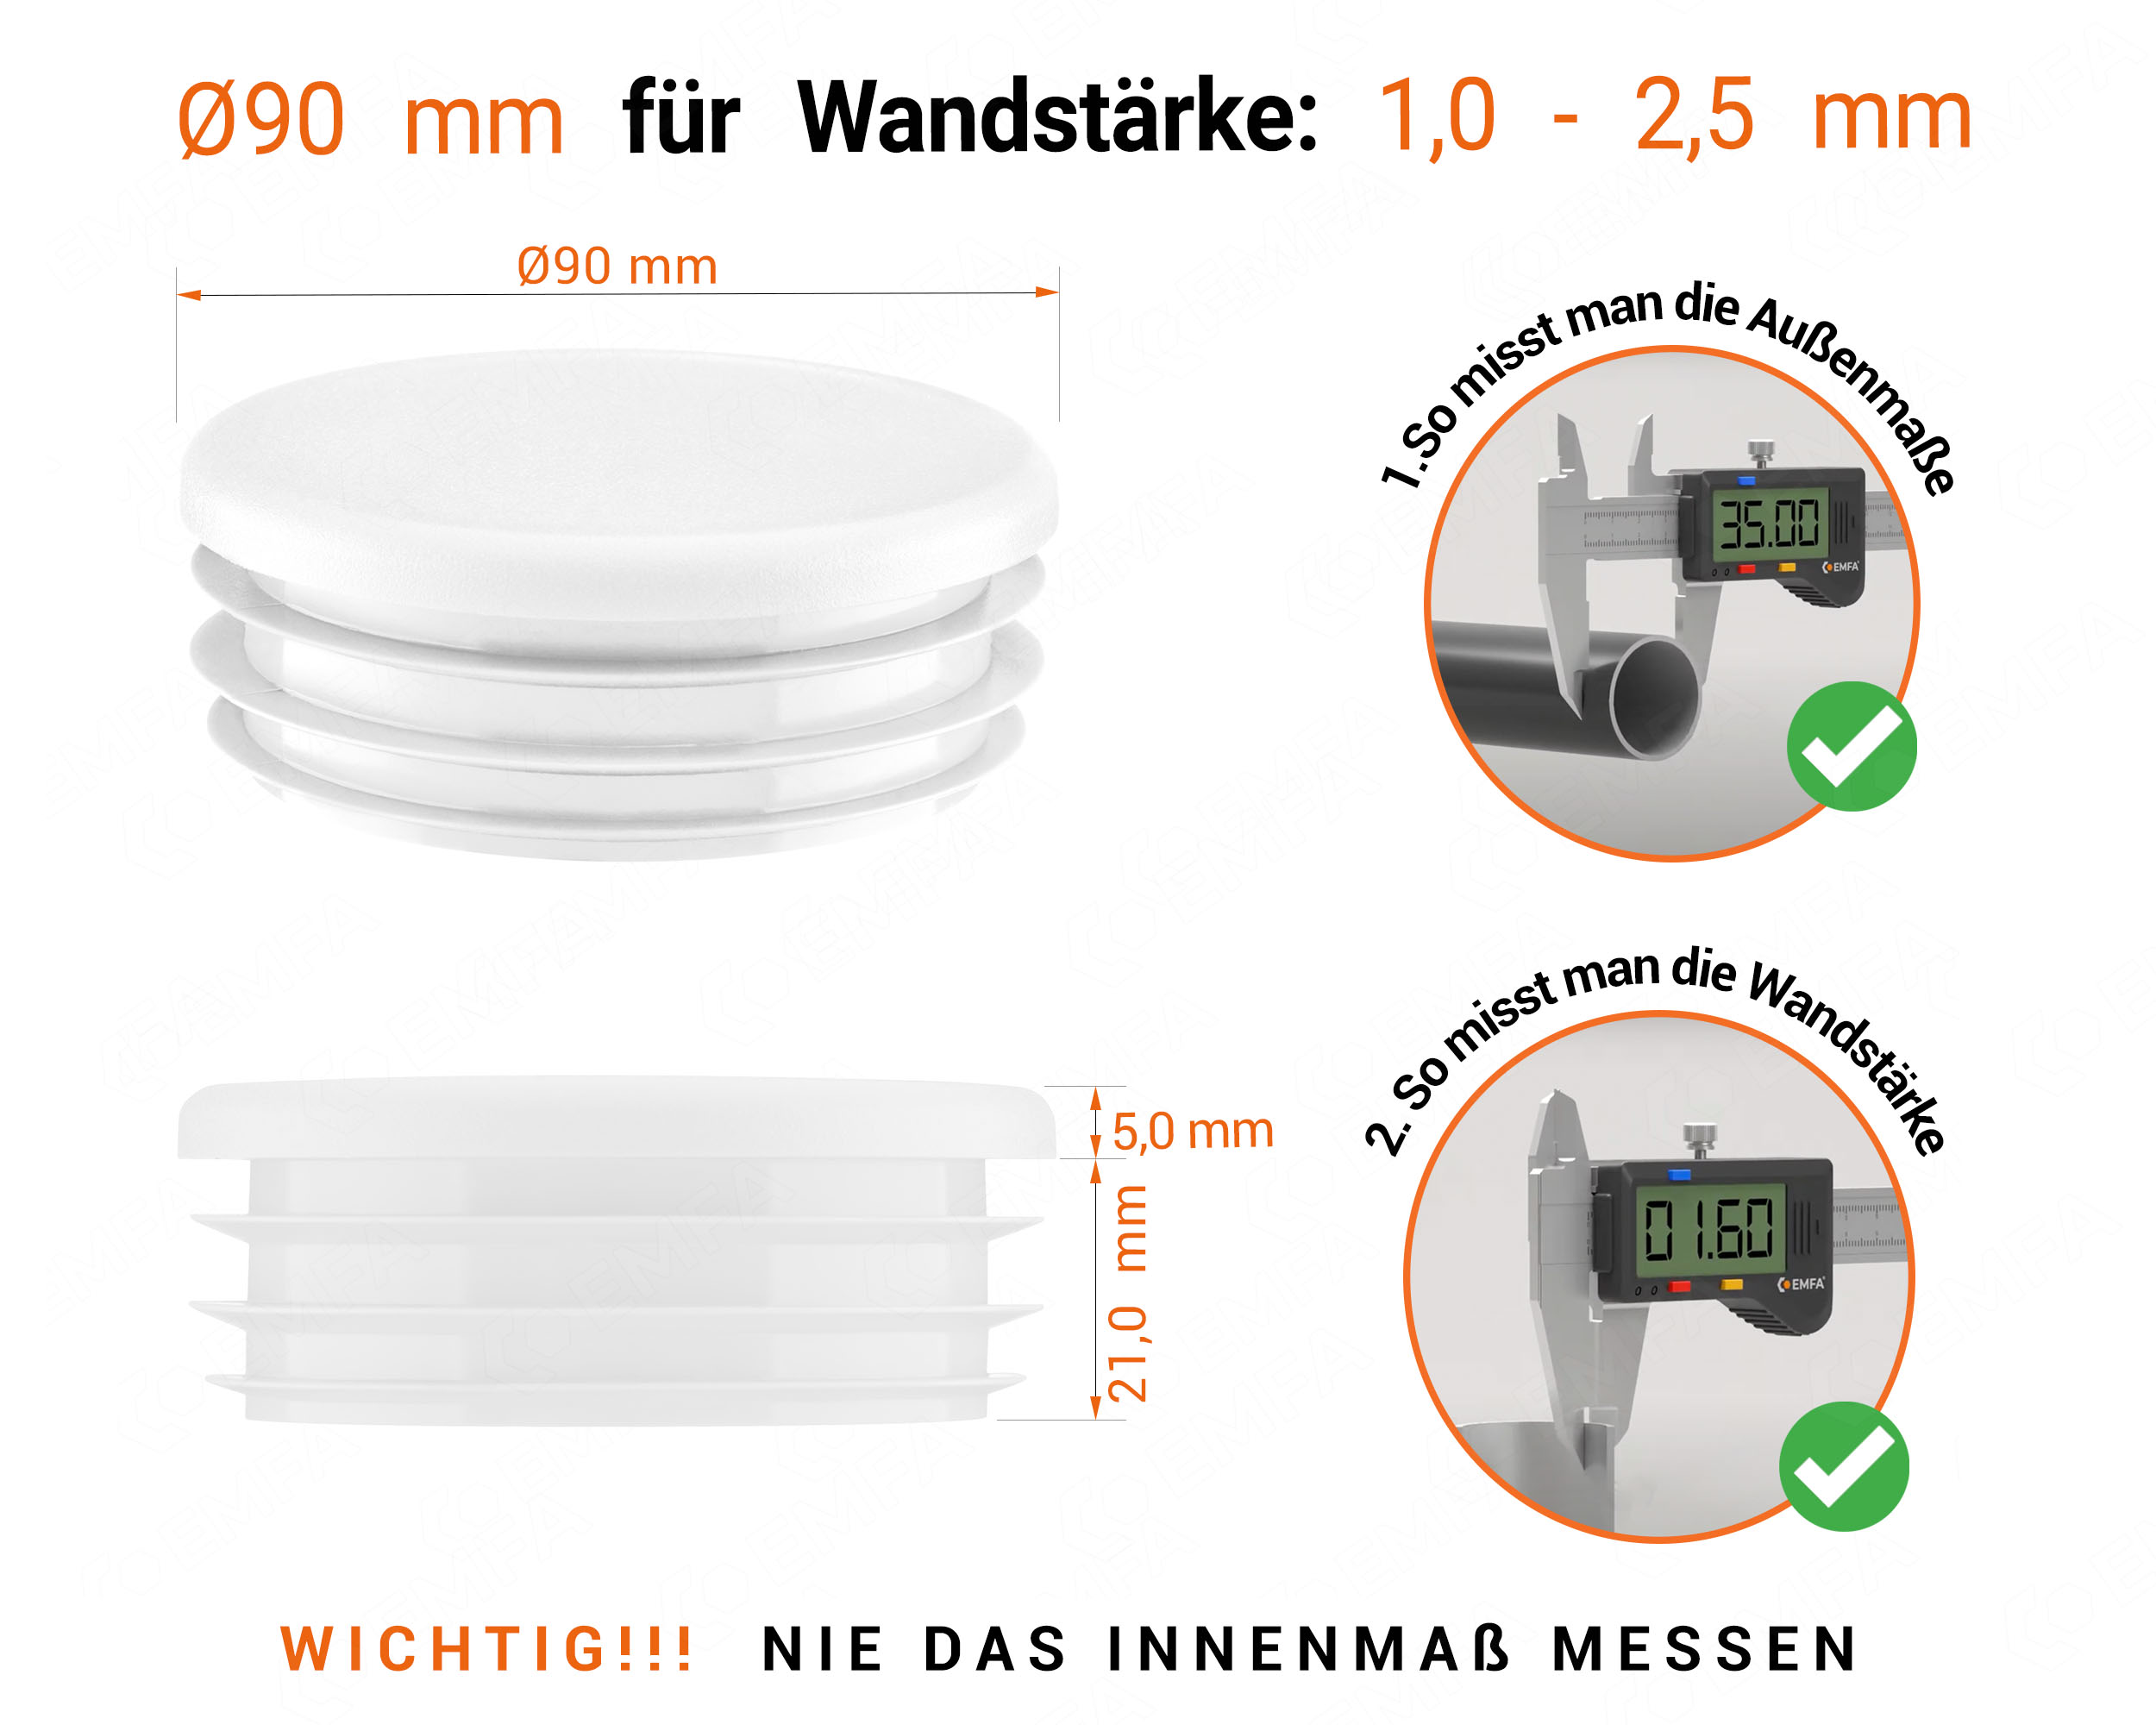 Weiße Endkappe für Rundrohre in der Größe 90 mm mit technischen Abmessungen und Anleitung für korrekte Messung